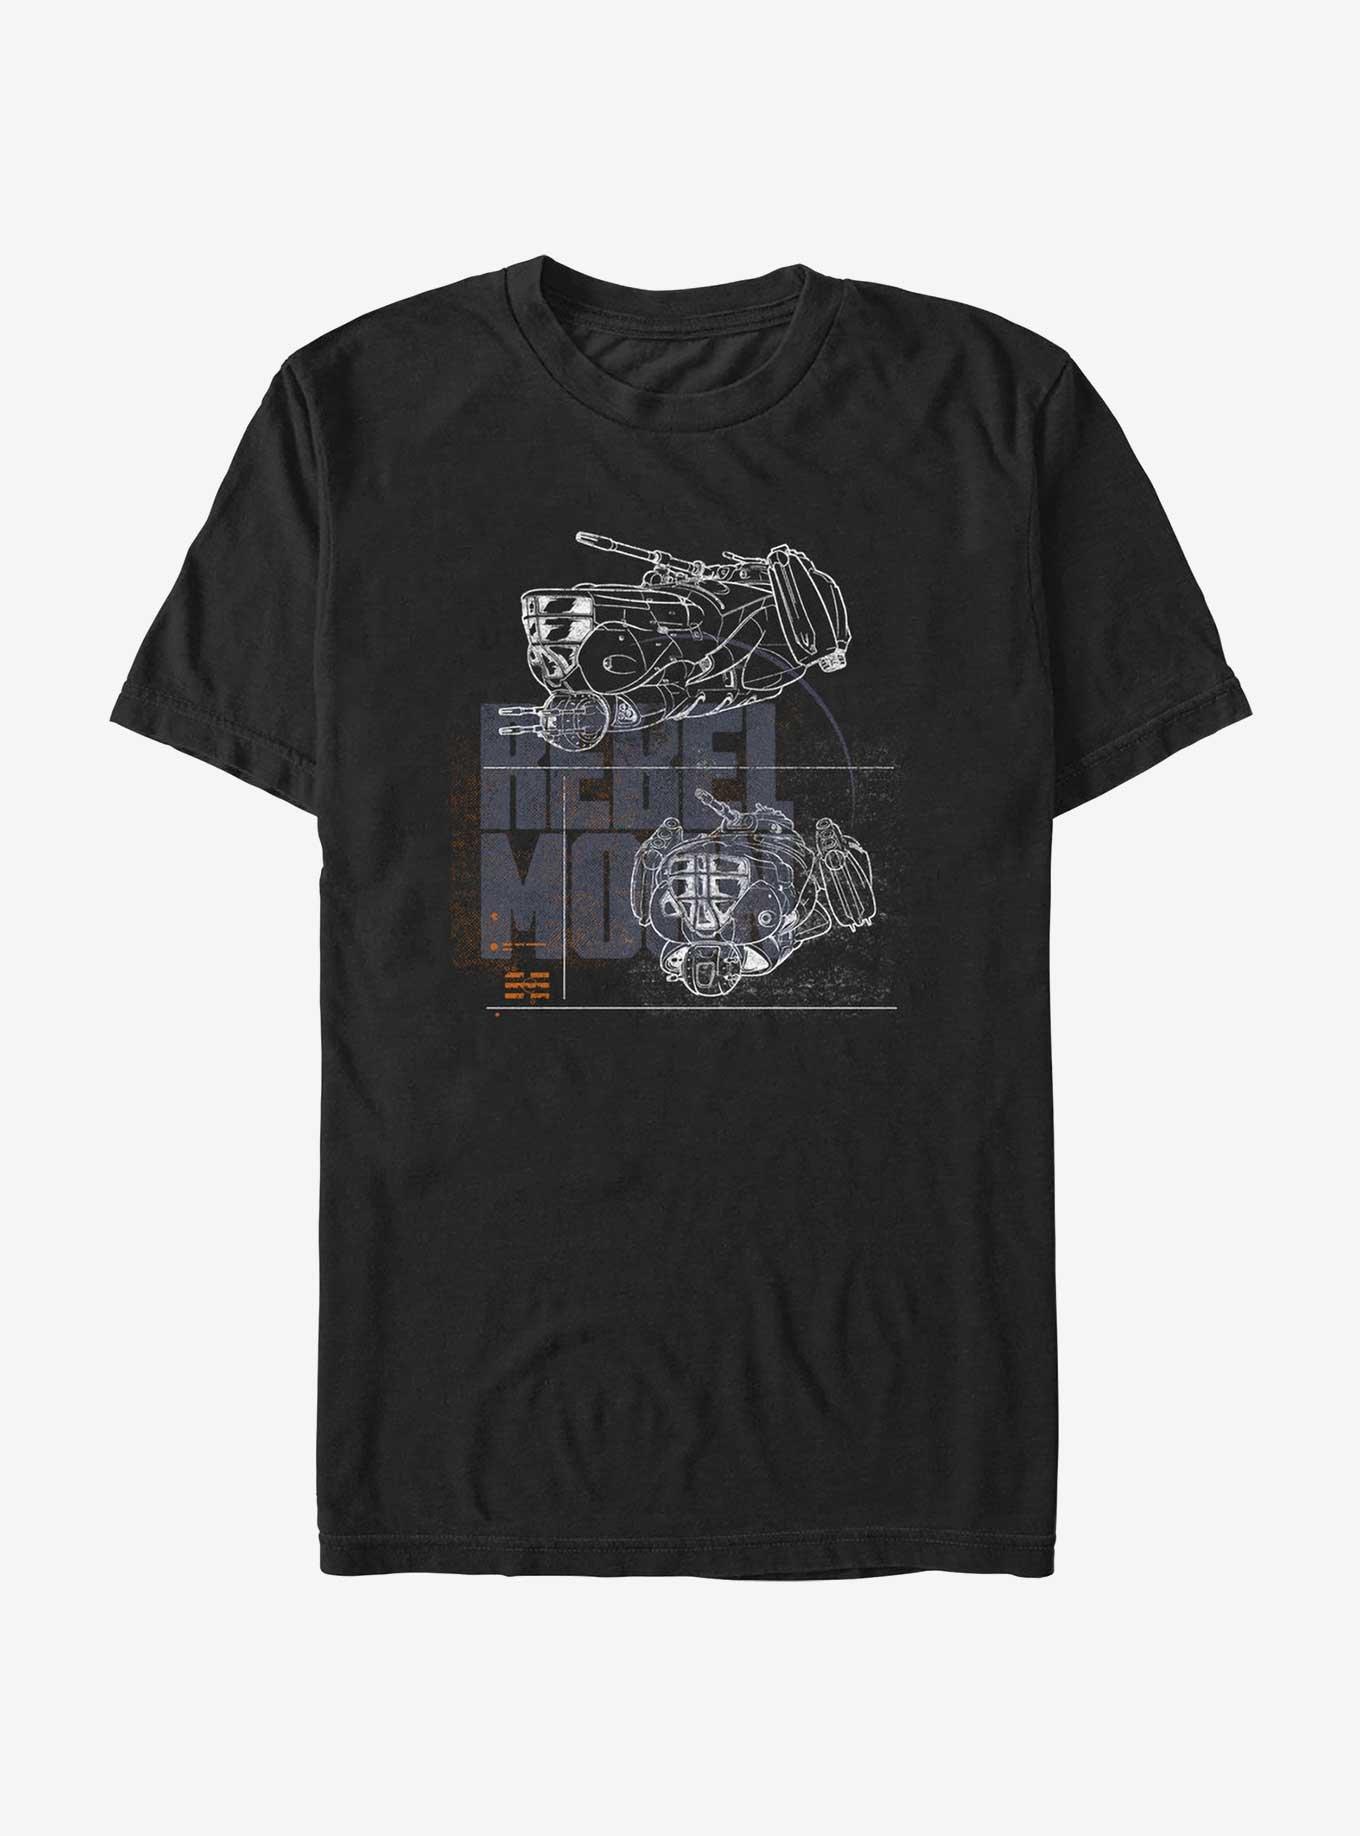 Rebel Moon Ships T-Shirt